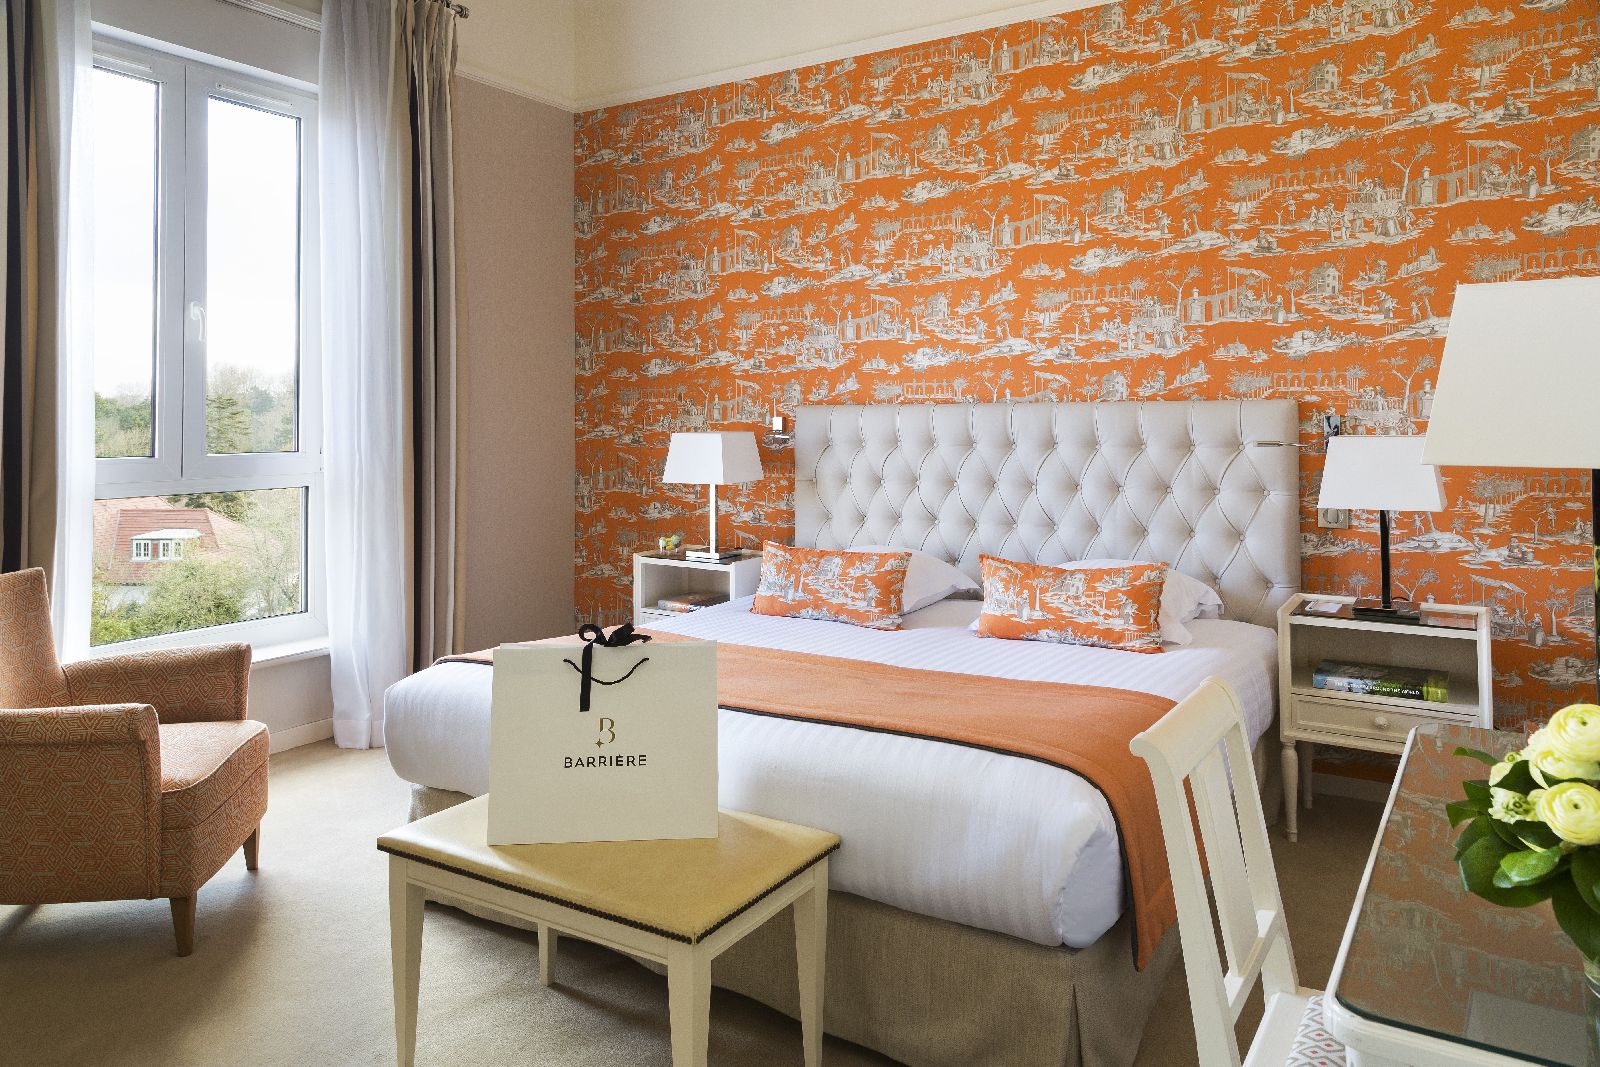 golf-expedition-golf-reizen-frankrijk-regio-pas-de-calais-hotel-barriere-le-westminster-slaapkamer-oranje-stijl-twee-personen-met-stoel.jpg